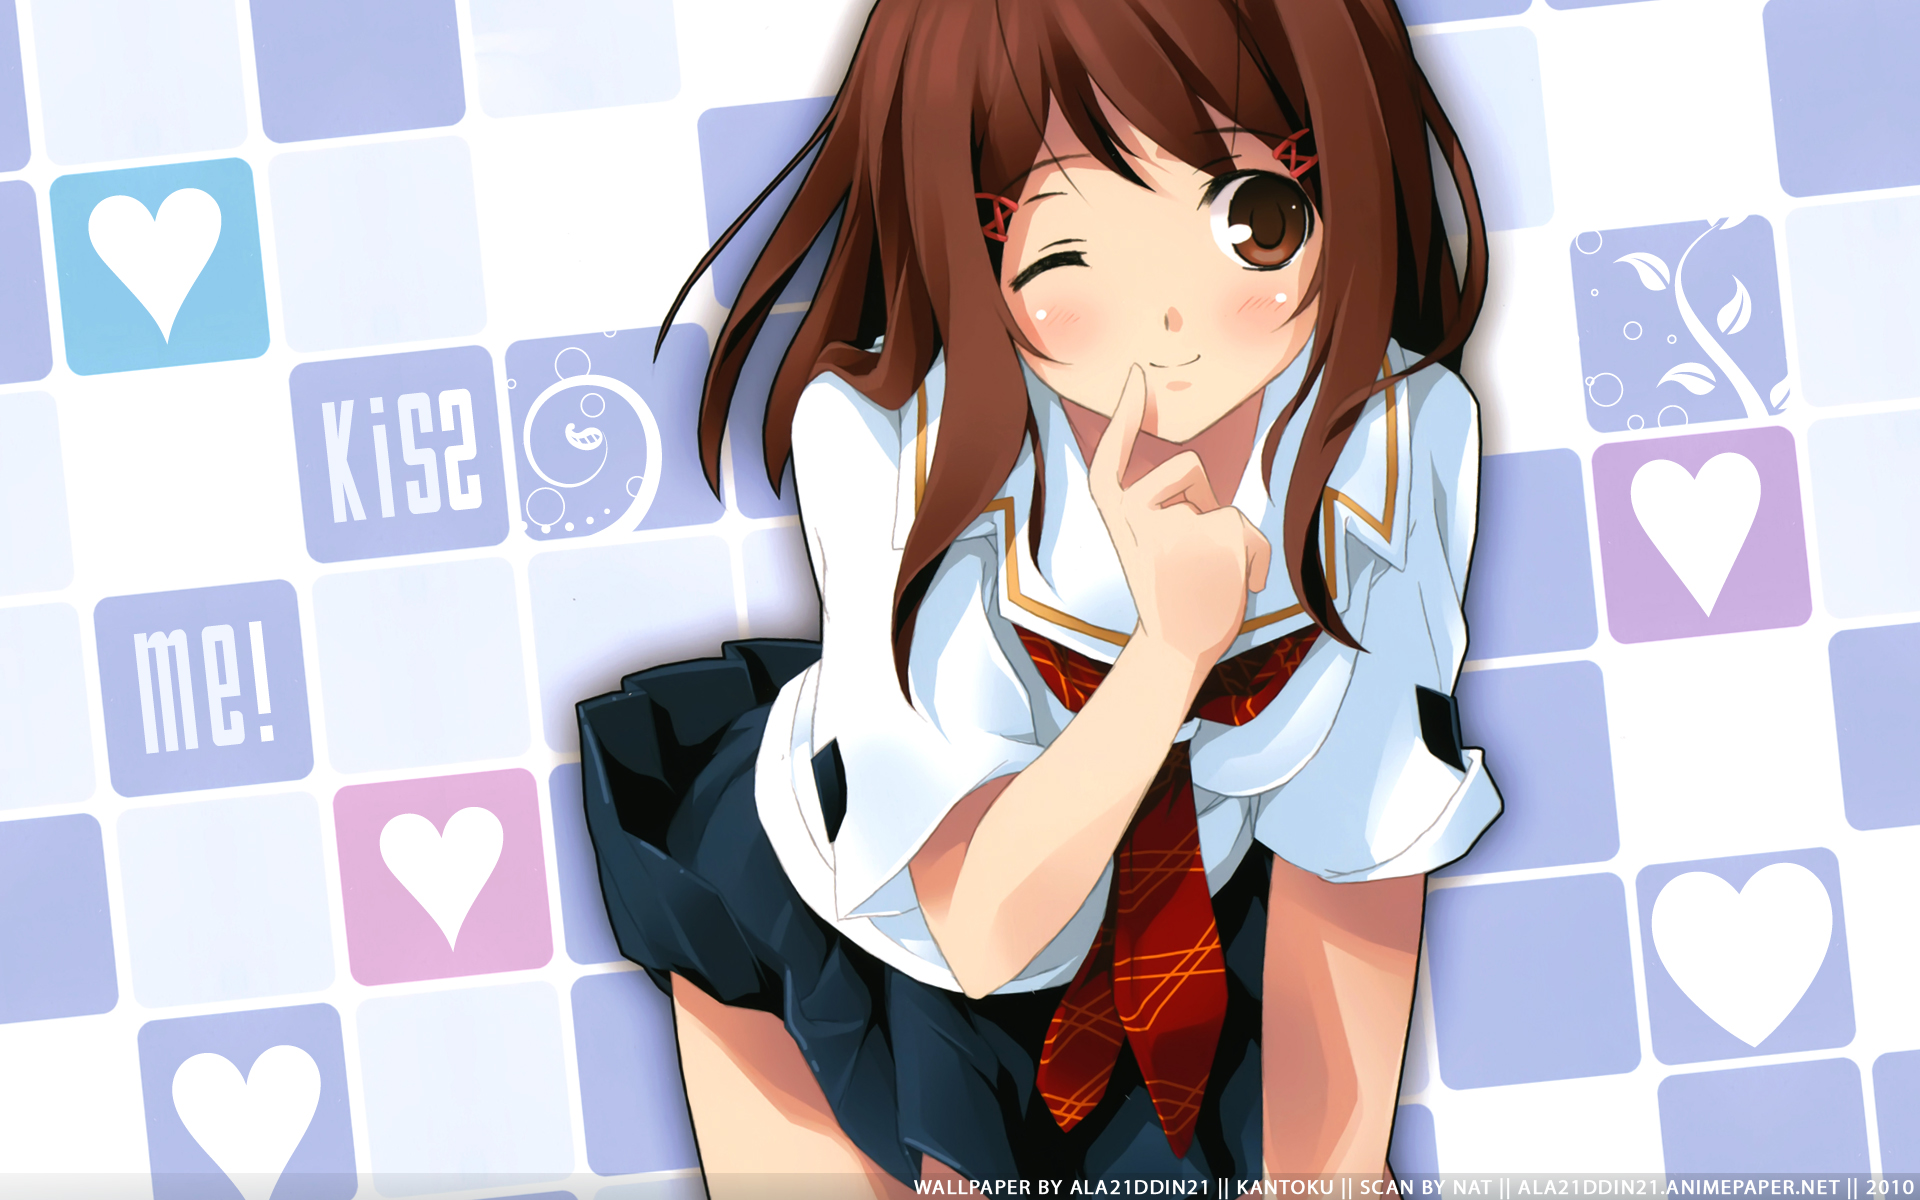 229865 descargar imagen animado, beso kimi, yumi hoshino: fondos de pantalla y protectores de pantalla gratis